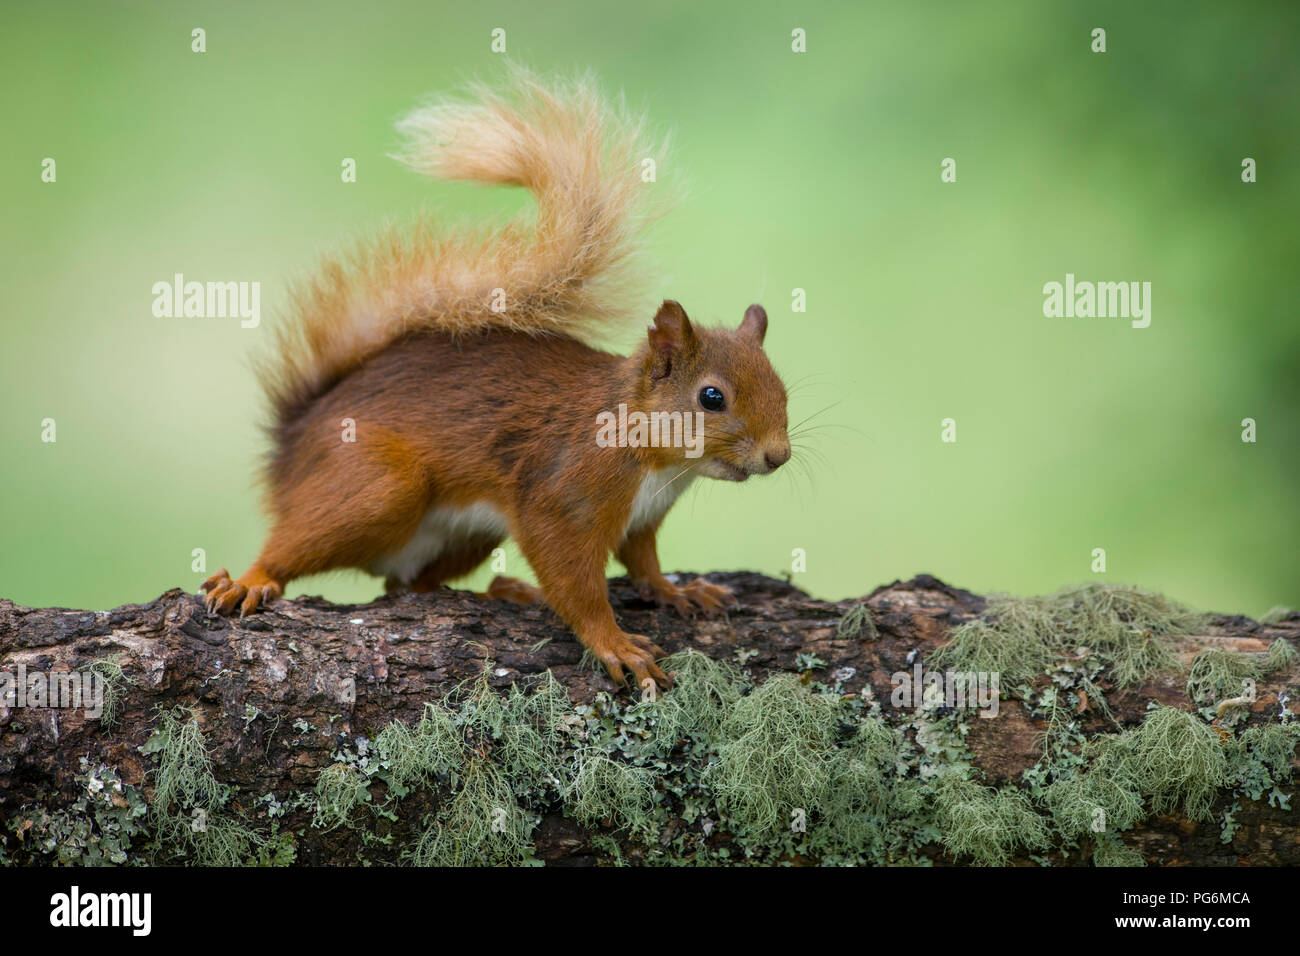 Portrait de l'Eurasian écureuil rouge sur tronc d'arbre Banque D'Images